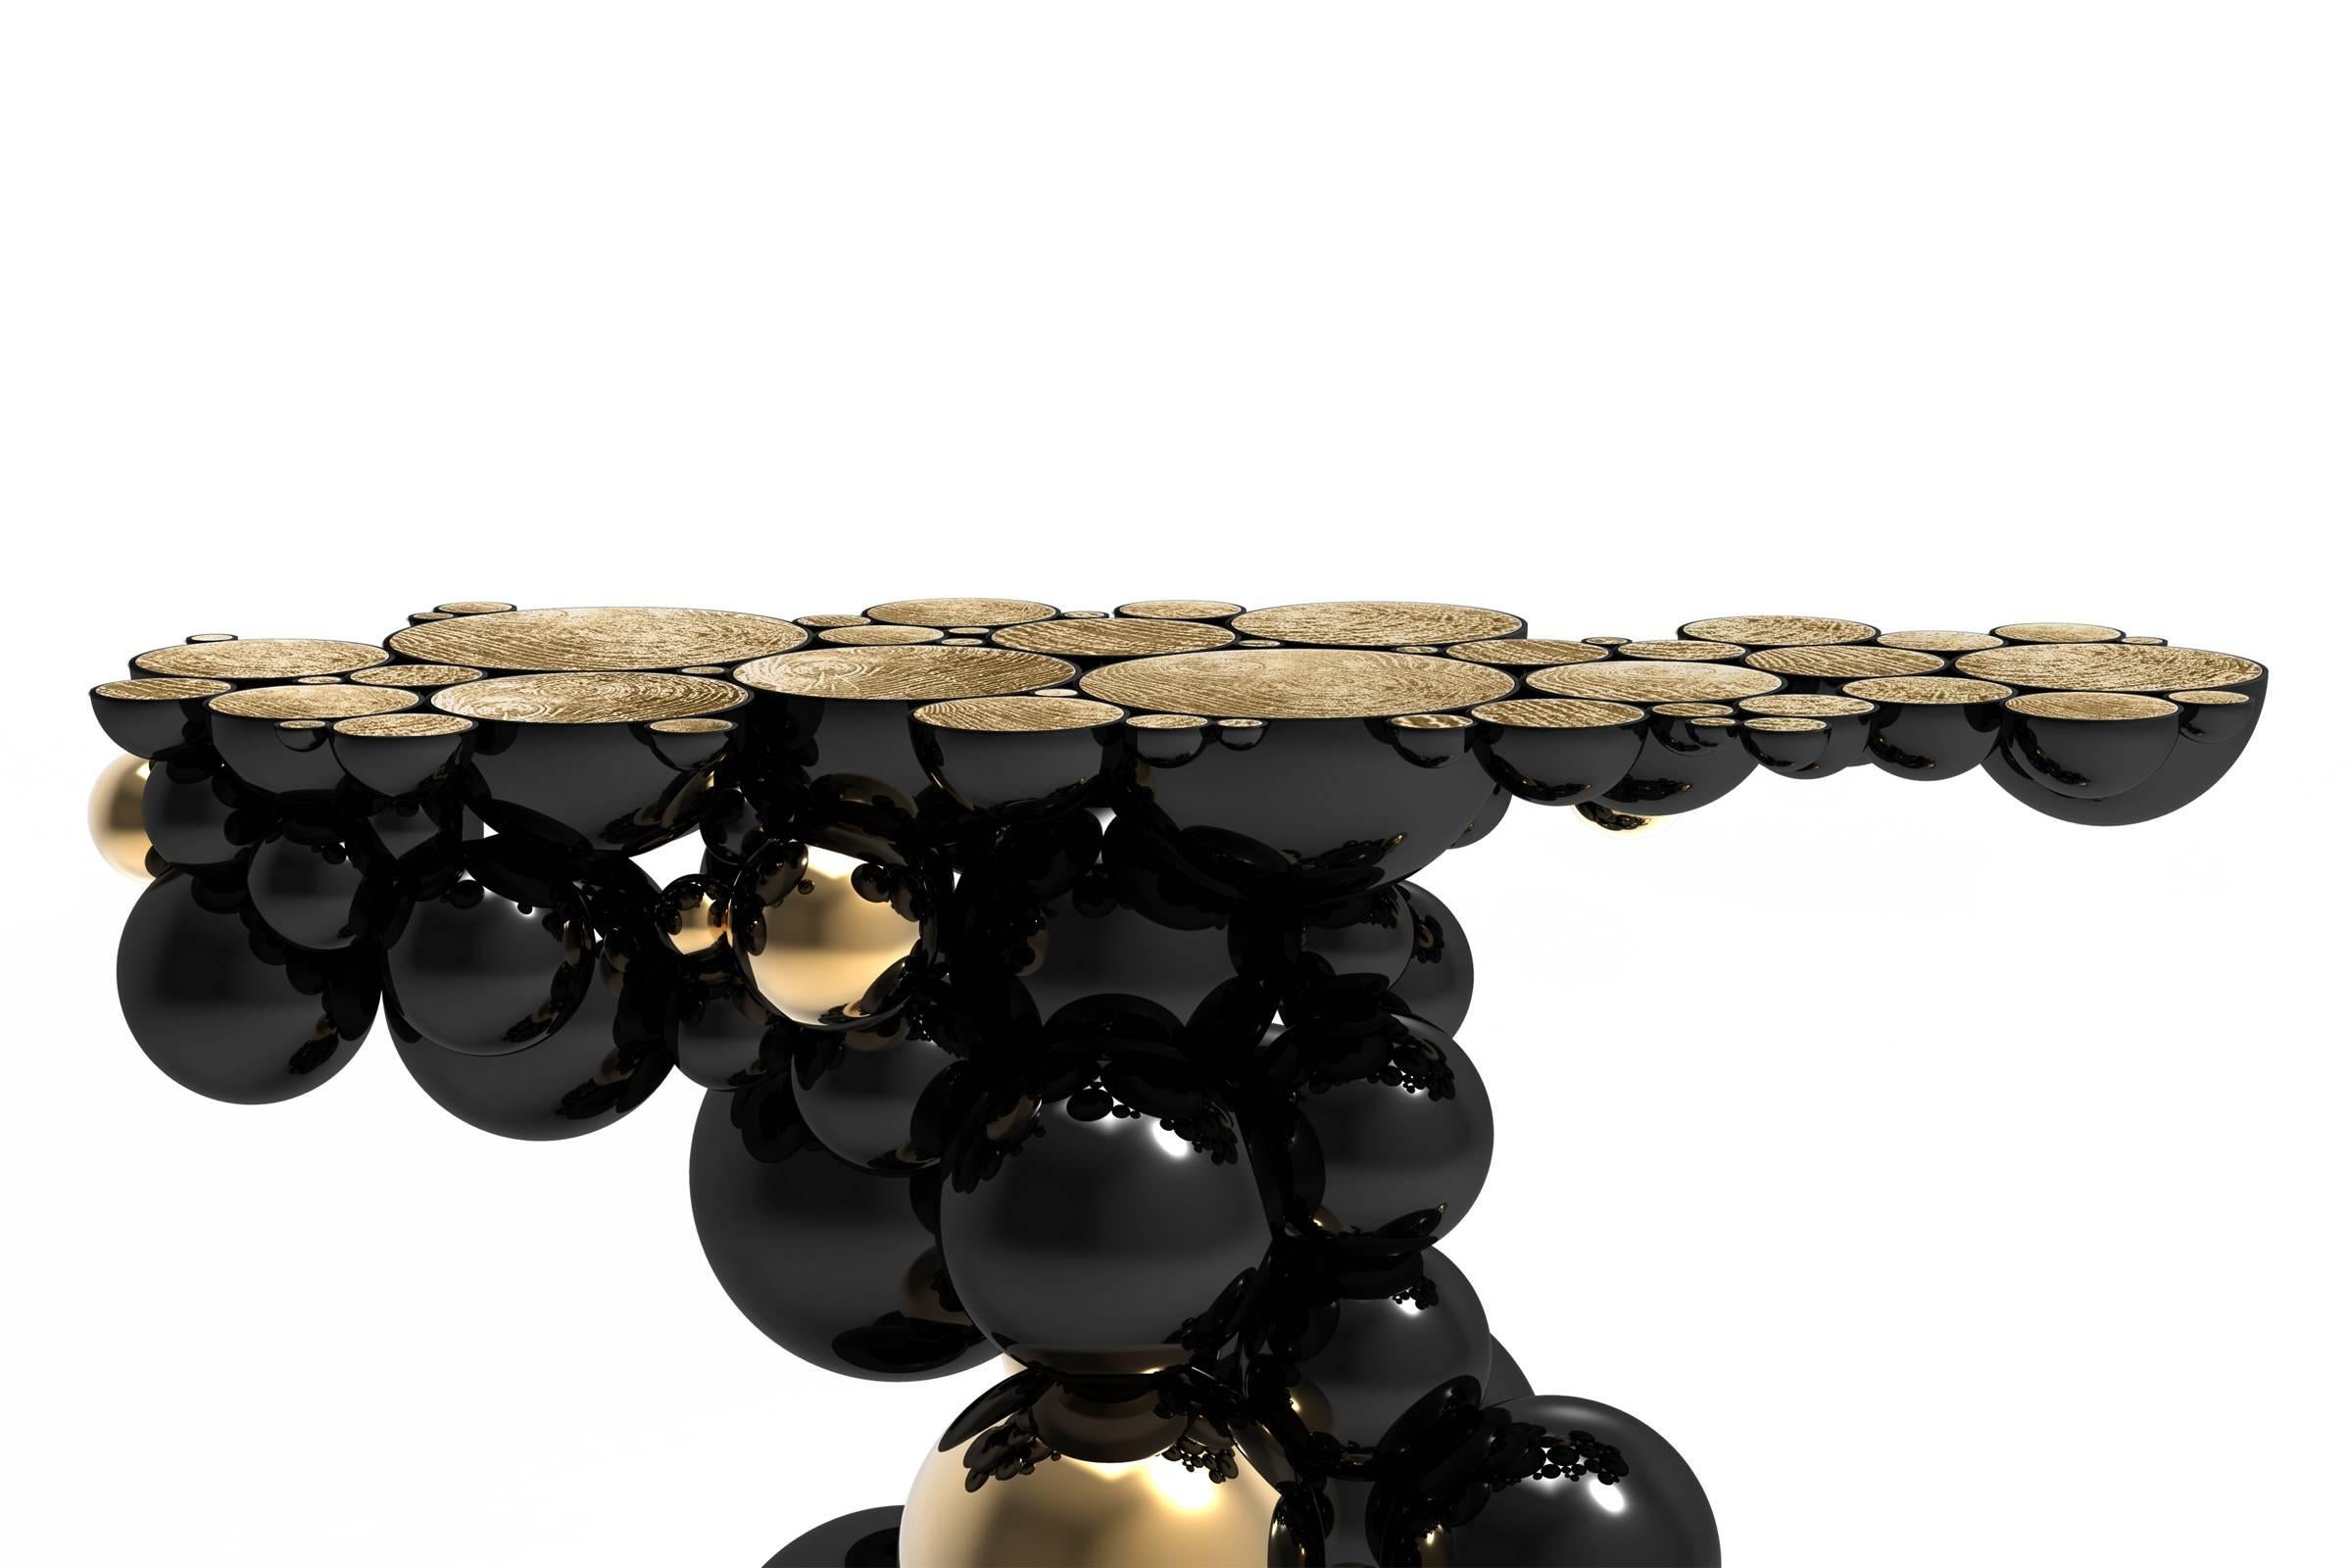 Sphères de table de console composées de sphères métalliques 
et des demi-sphères réunies. Aluminium noir et 
finition dorée.
